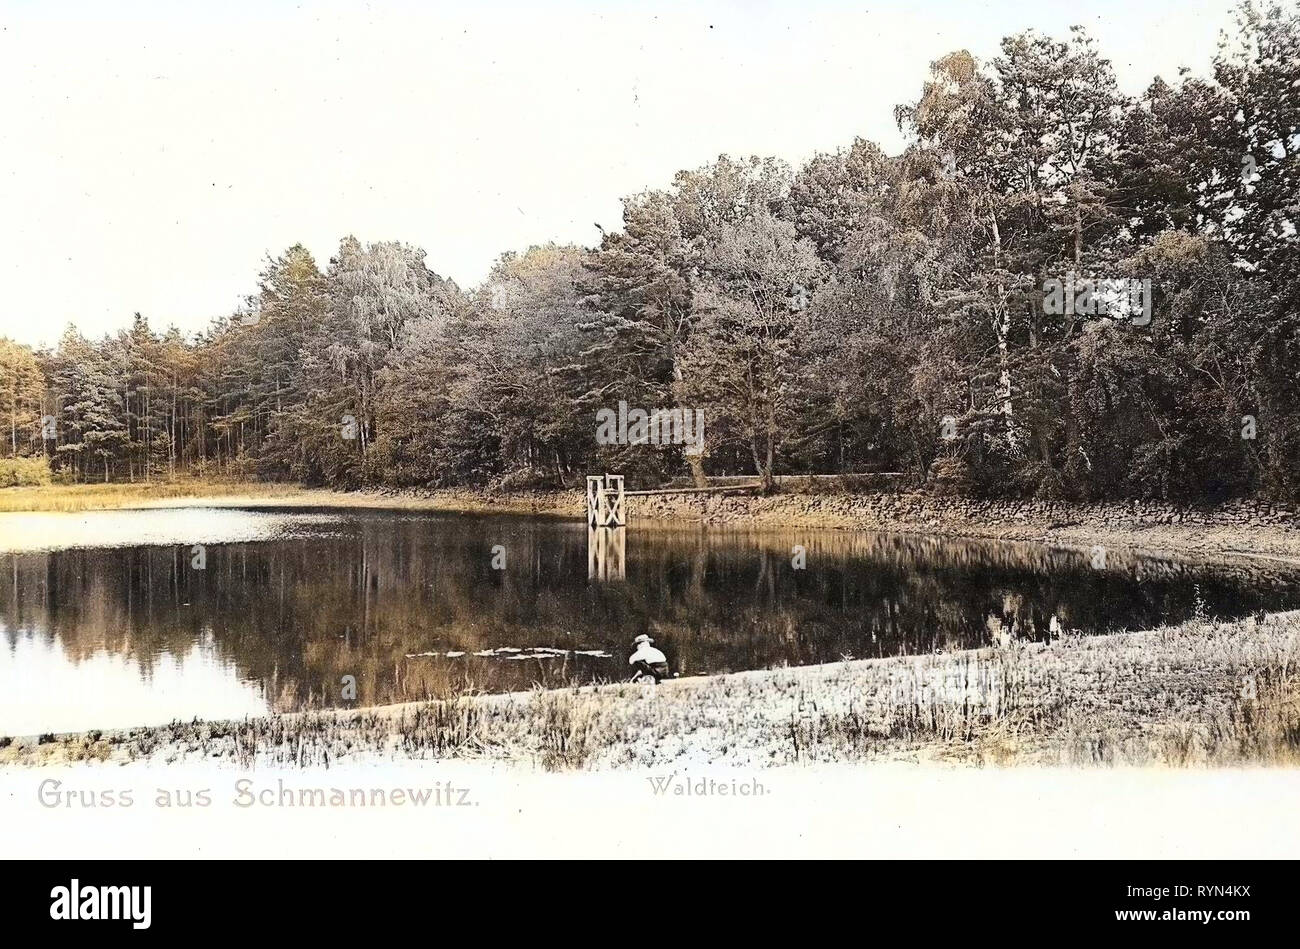 Ponds in Landkreis Nordsachsen, Dahlen, 1904, Landkreis Nordsachsen, Schmannewitz, Waldteich mit Freibad, Germany Stock Photo